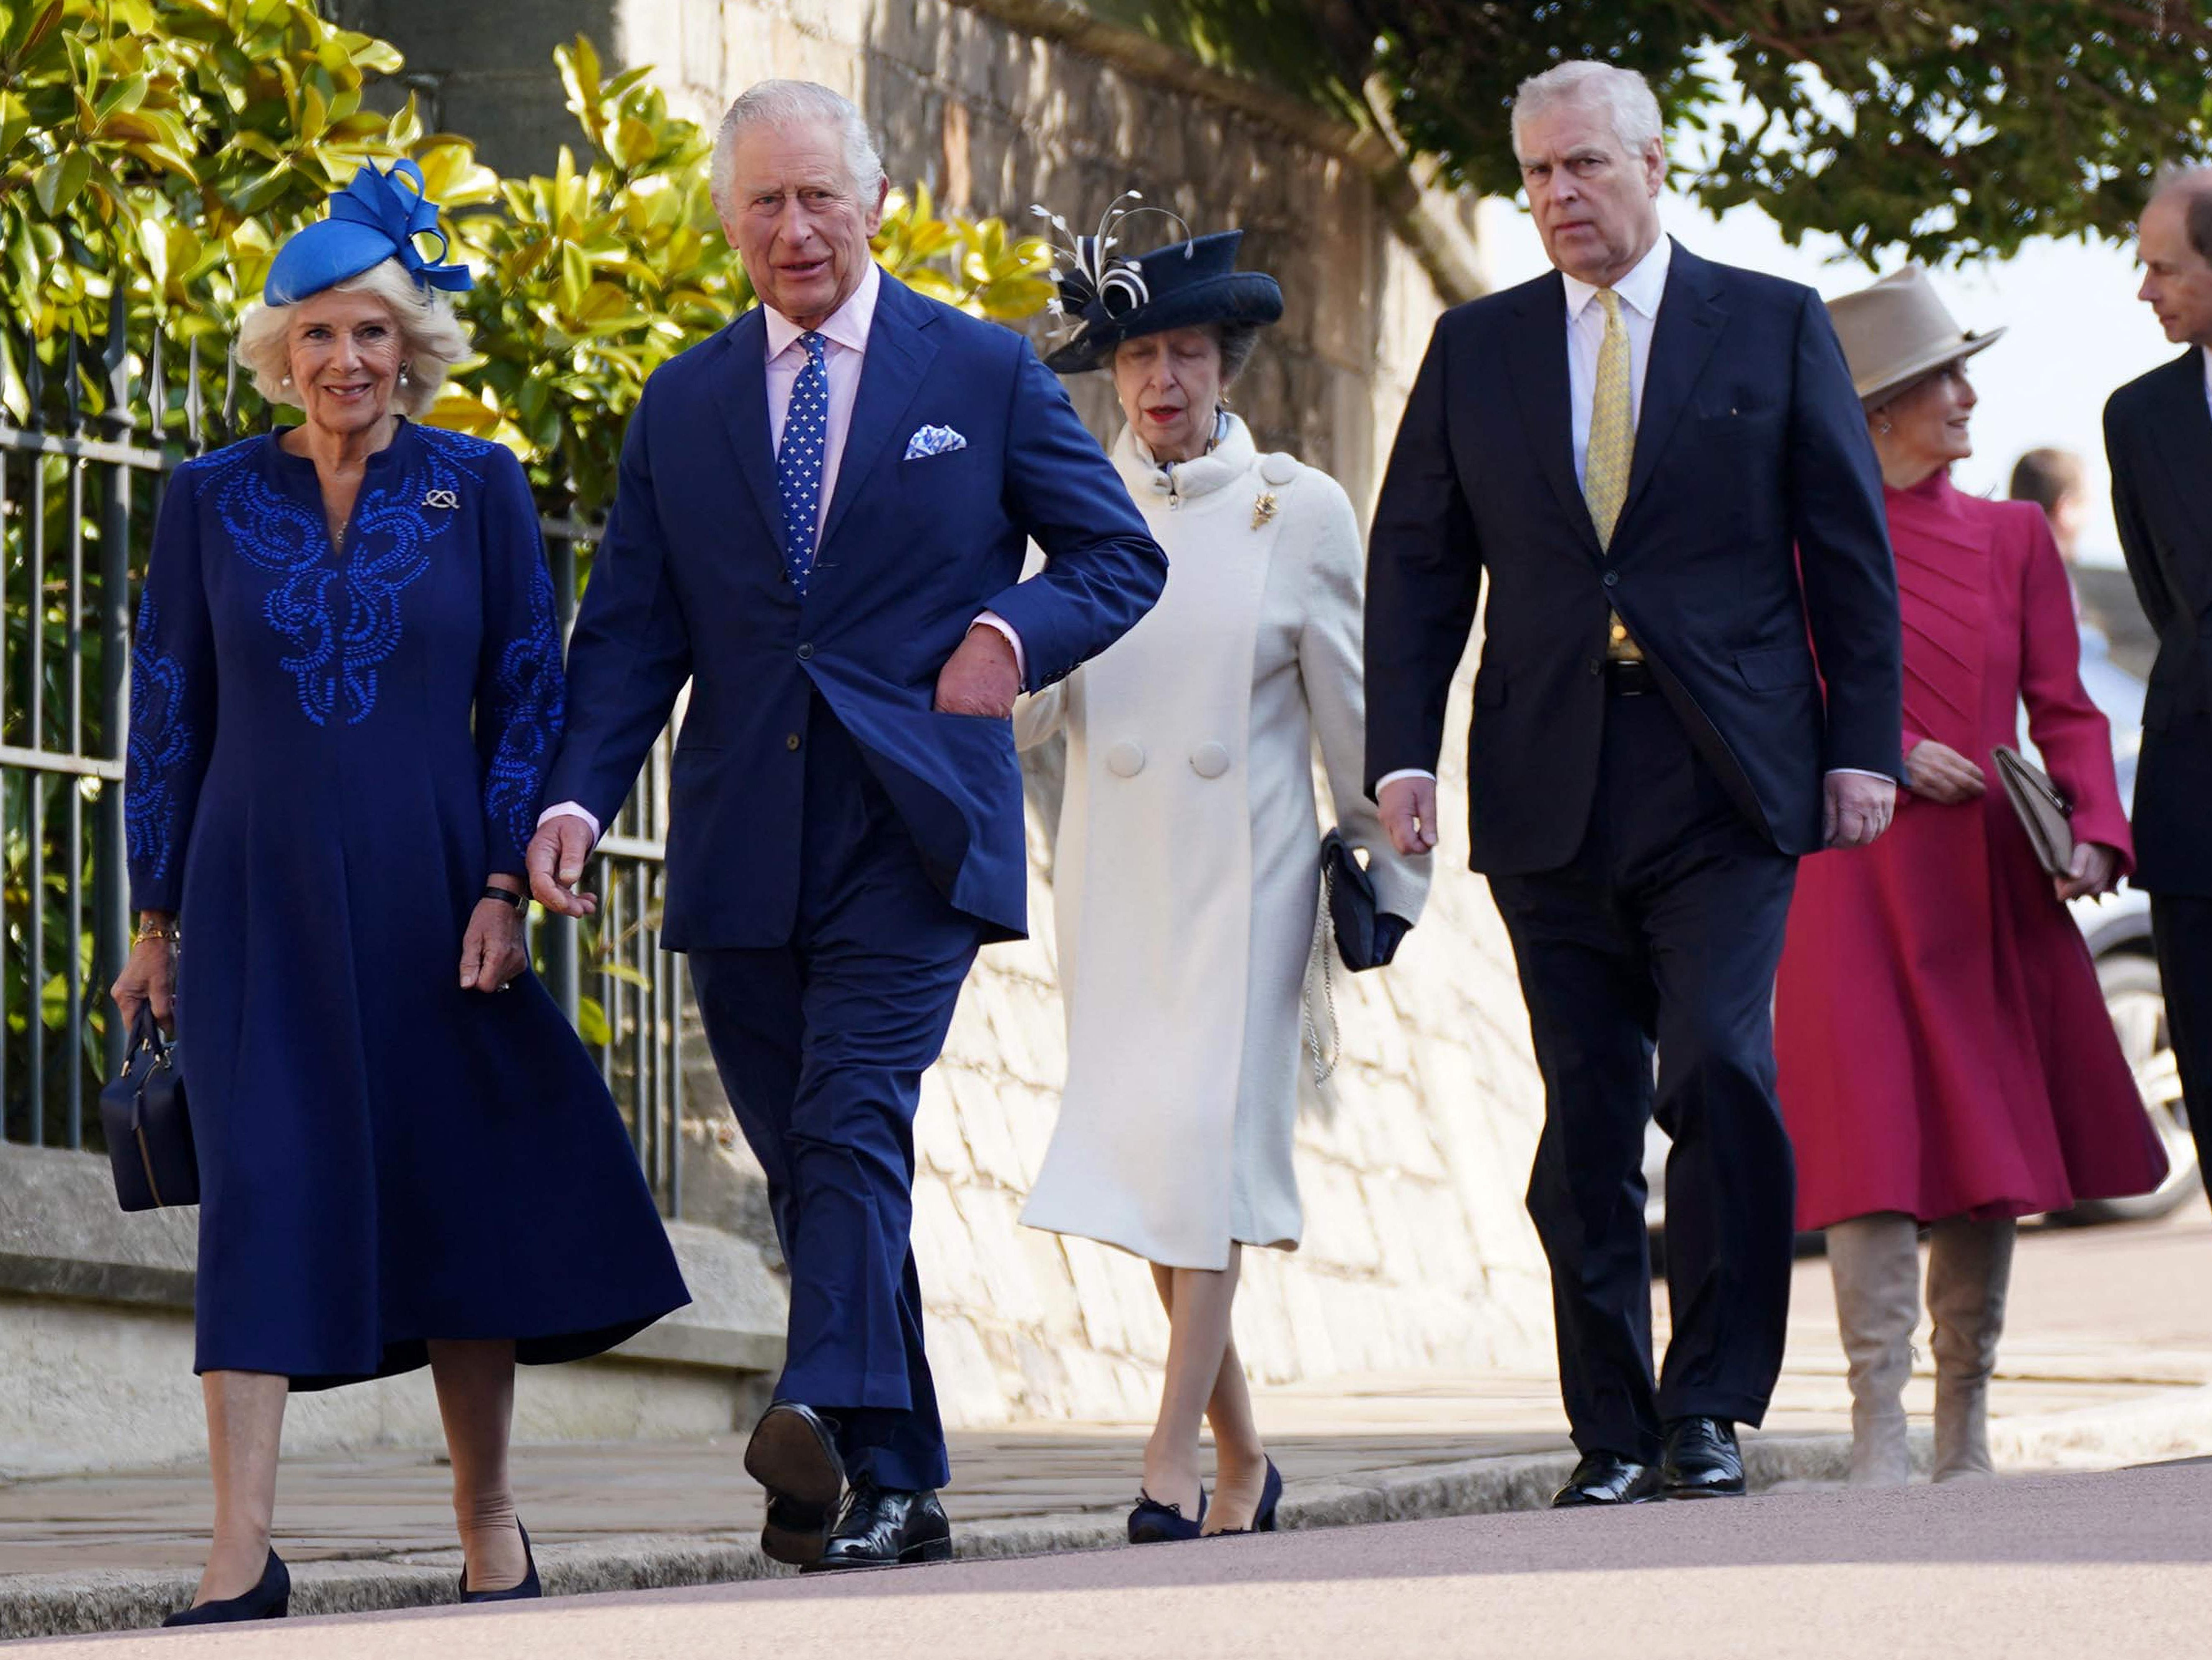 El rey Carlos III y la reina Camila (izq.) caminan con la princesa Anne, princesa real, y el príncipe Andrew, duque de York (centro), Sofía, duquesa de Edimburgo, y el príncipe Edward, duque de Edimburgo (atrás) a su llegada al servicio de maitines de Pascua en la capilla de St. George, castillo de Windsor